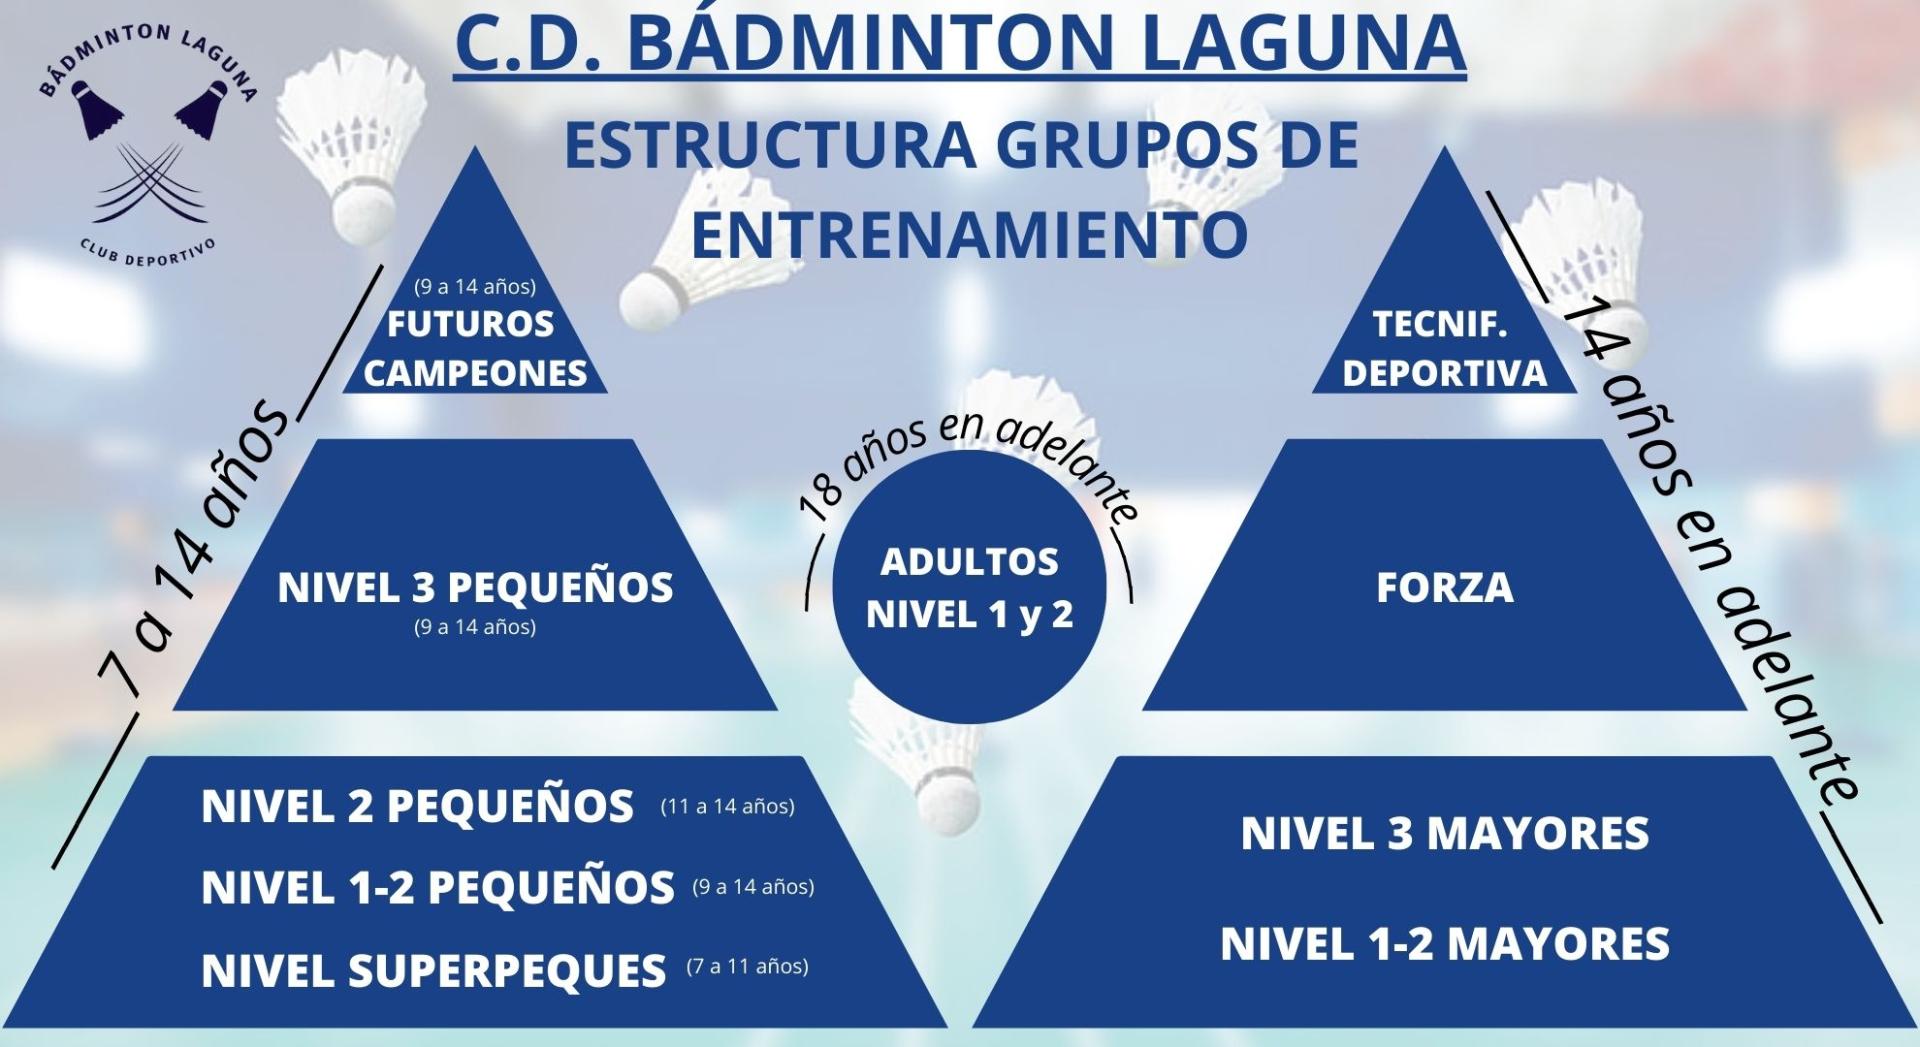 Estructura grupos de entrenamiento c d badminton laguna